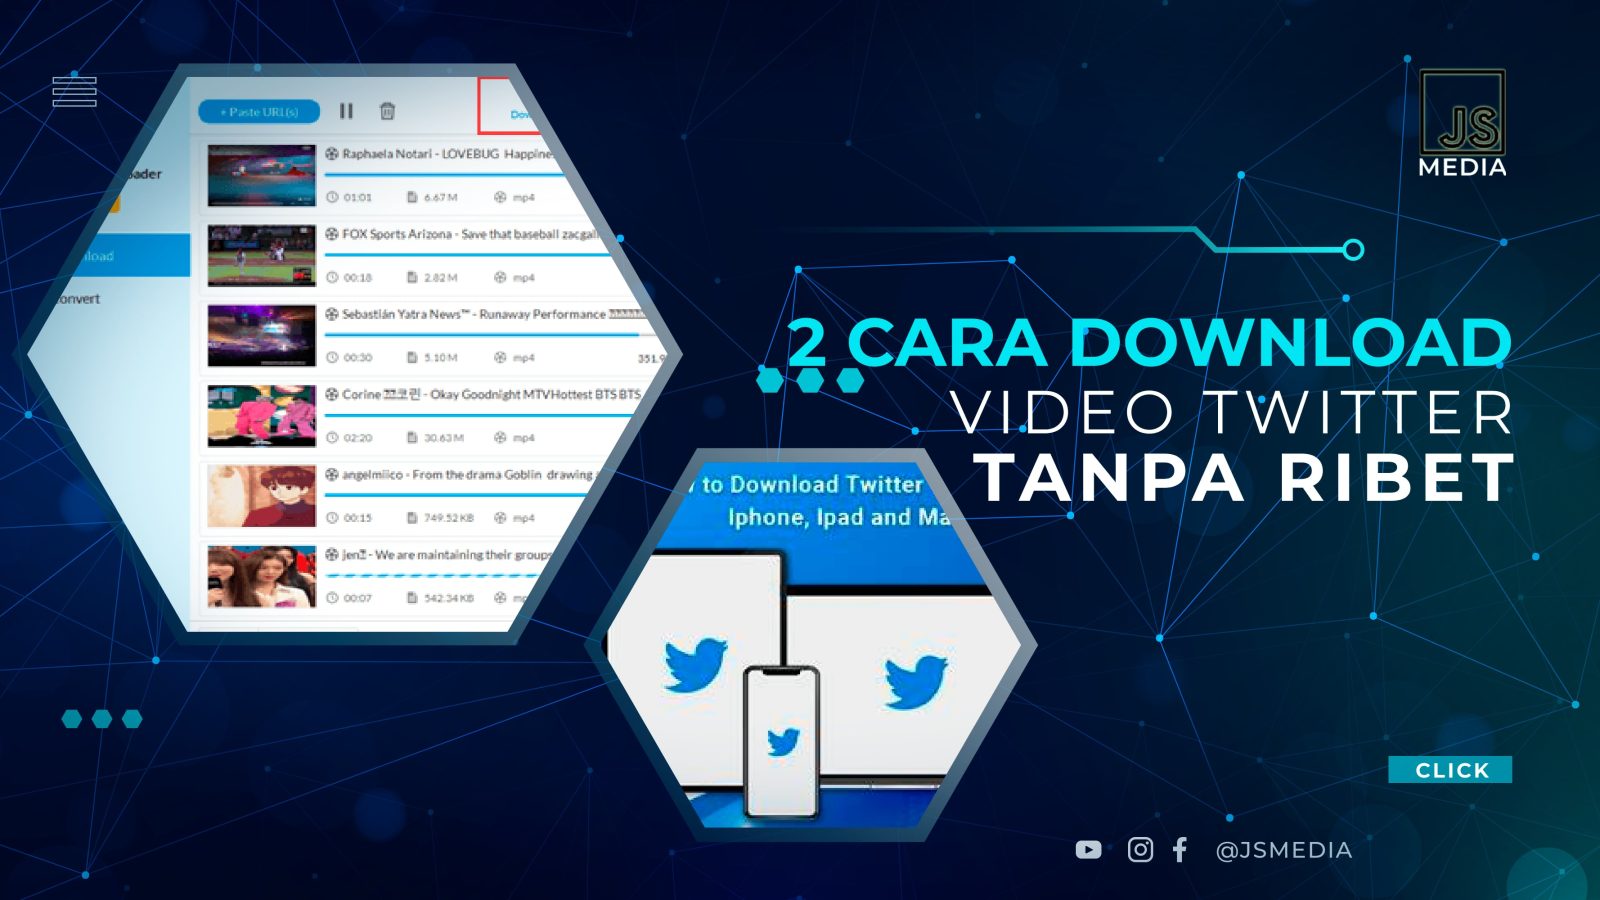 2 Cara Download Video Twitter Tanpa Ribet